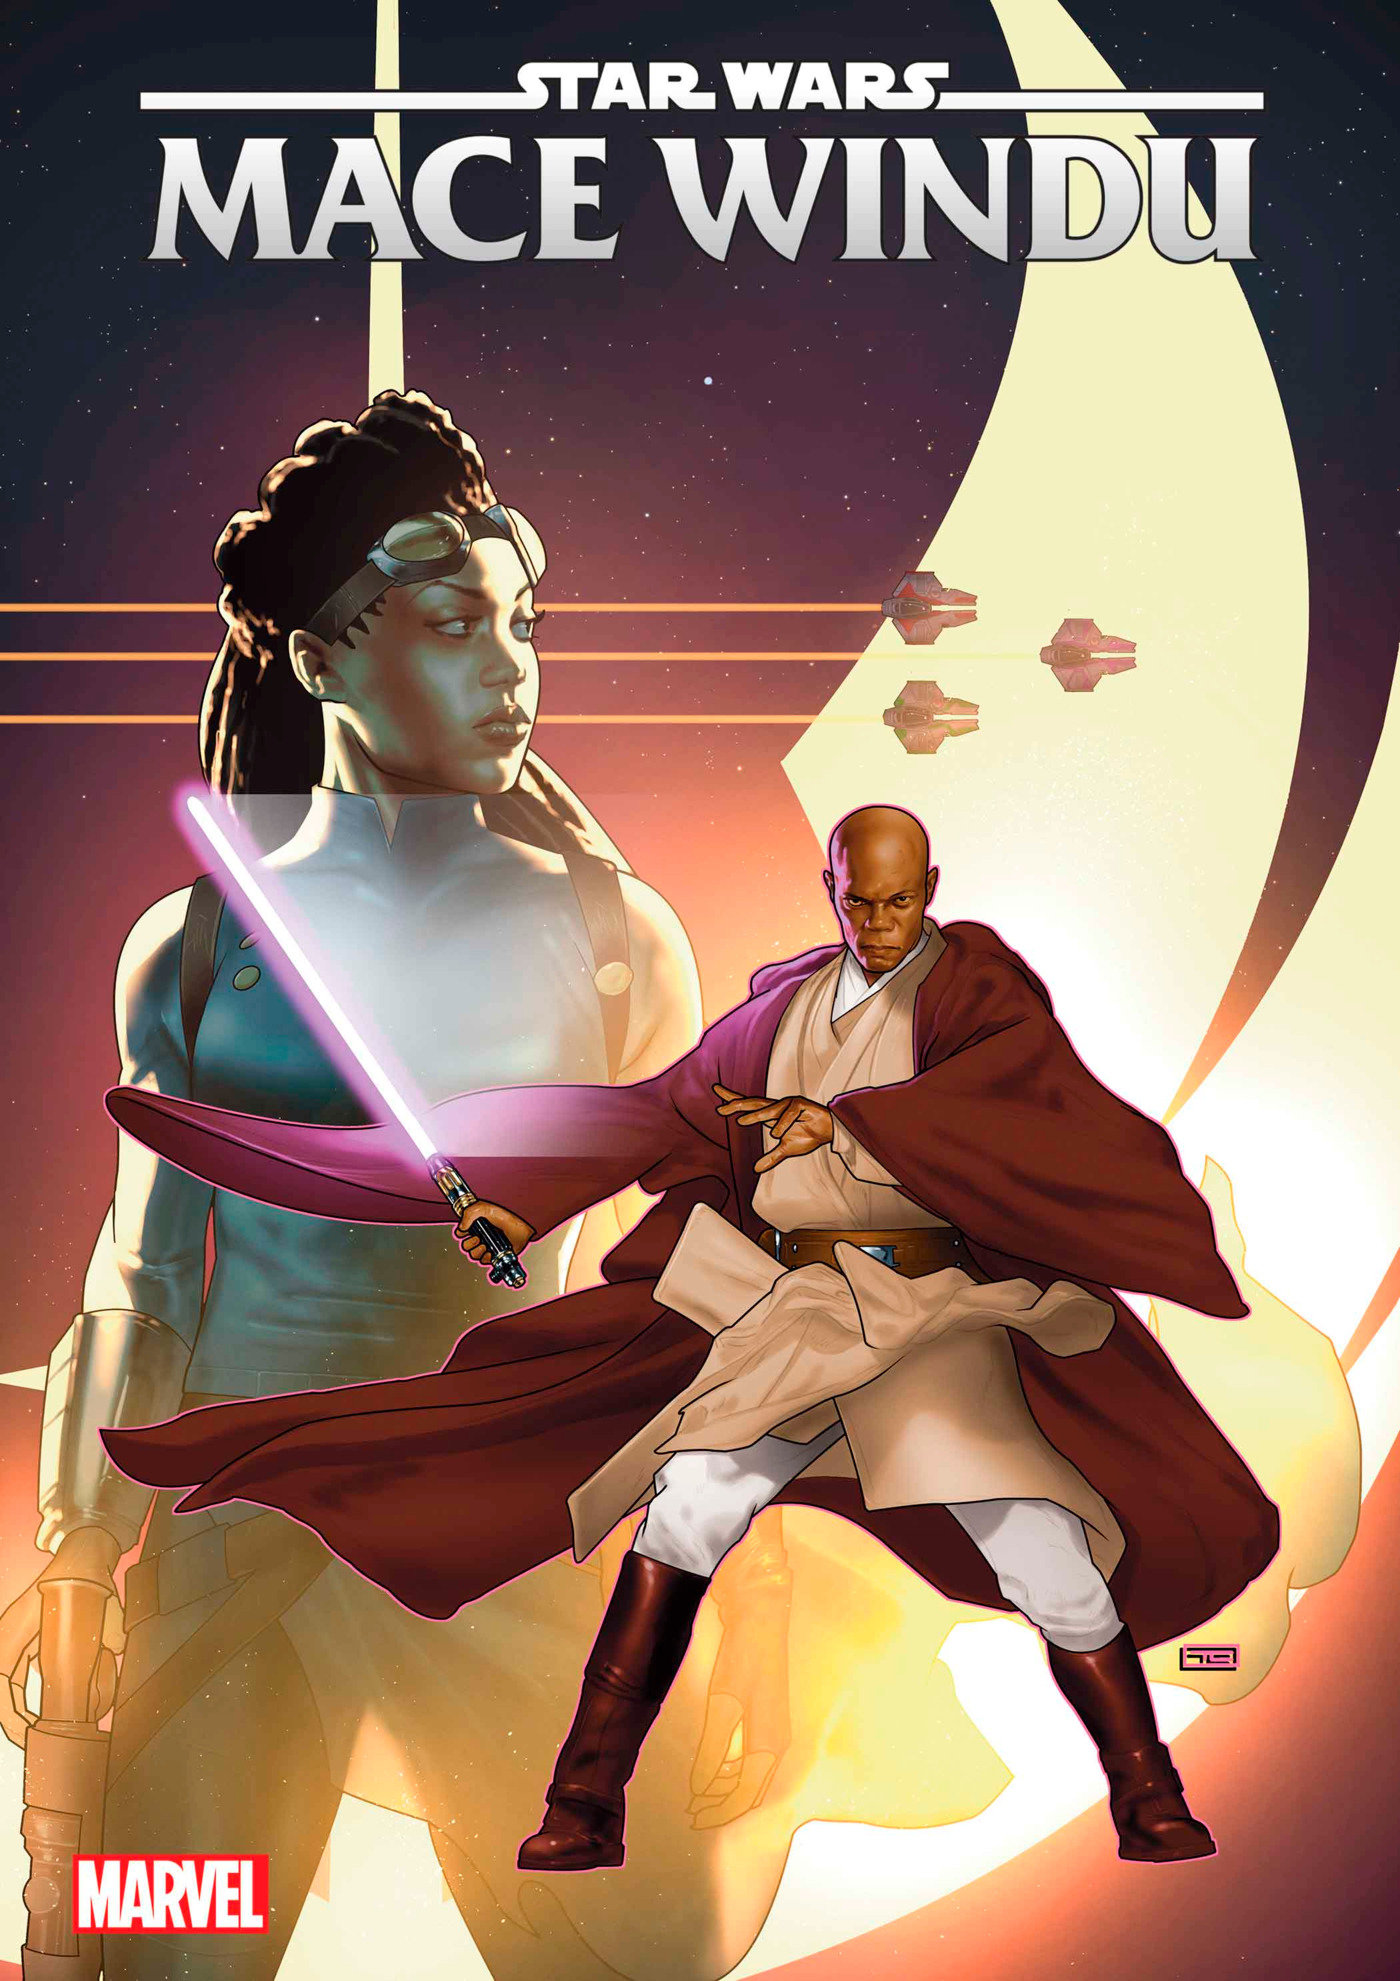 Star Wars: Mace Windu #1 Taurin Clarke Variant 1 for 25 Incentive